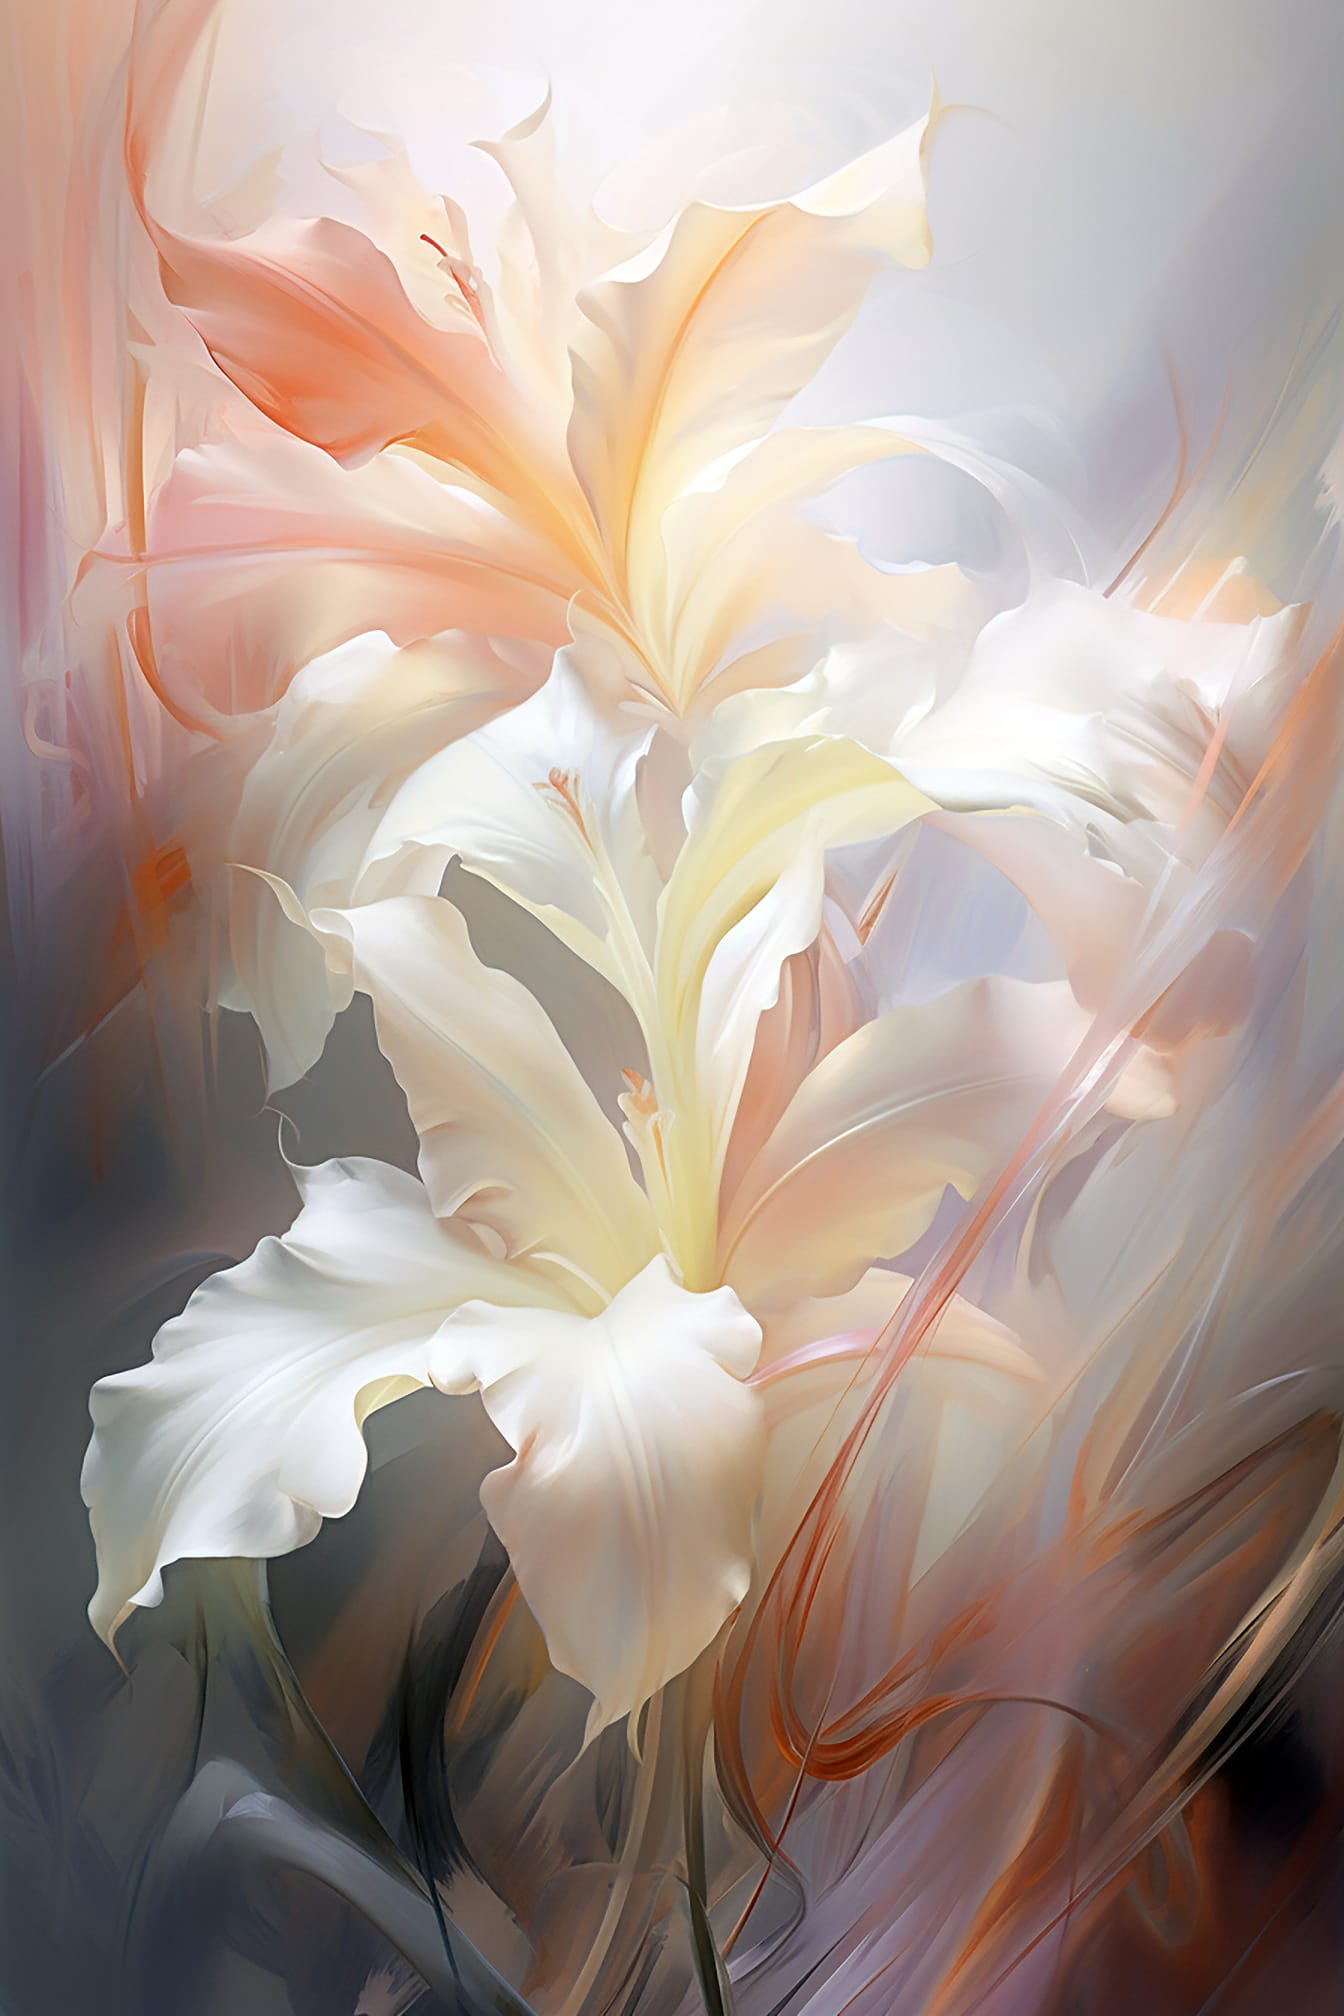 Illustrazione artistica astratta di petali di fiori bianchi in stile belle arti